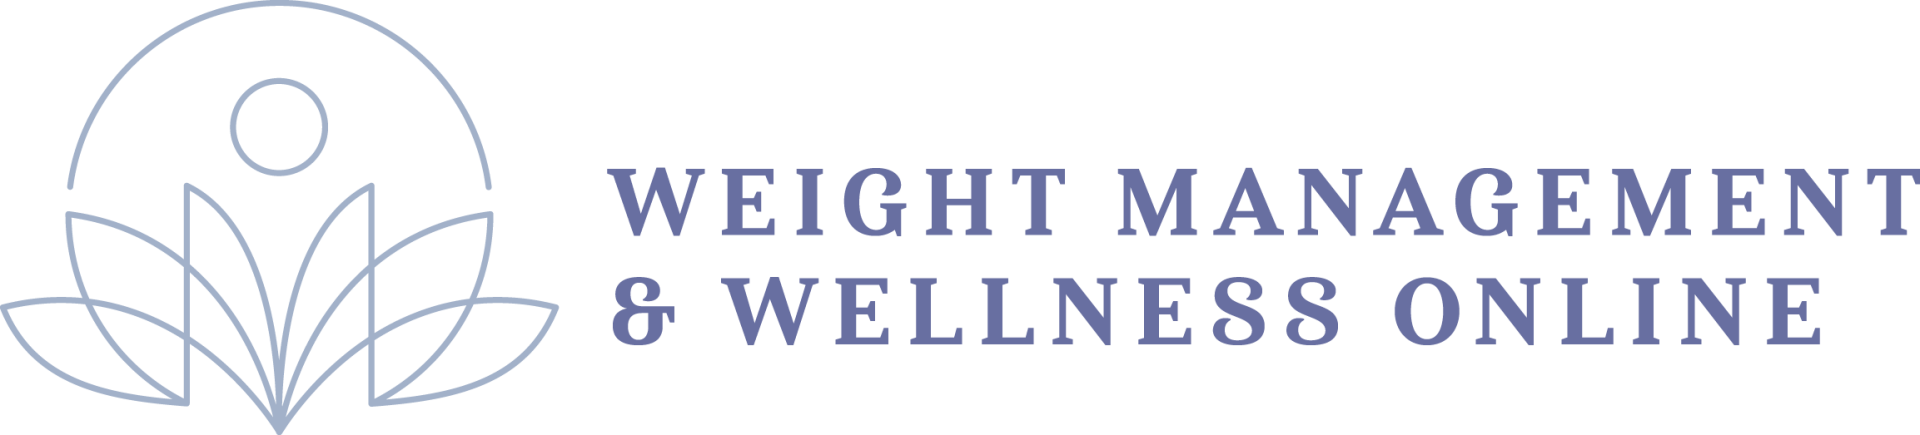 Weight Management & Wellness Online